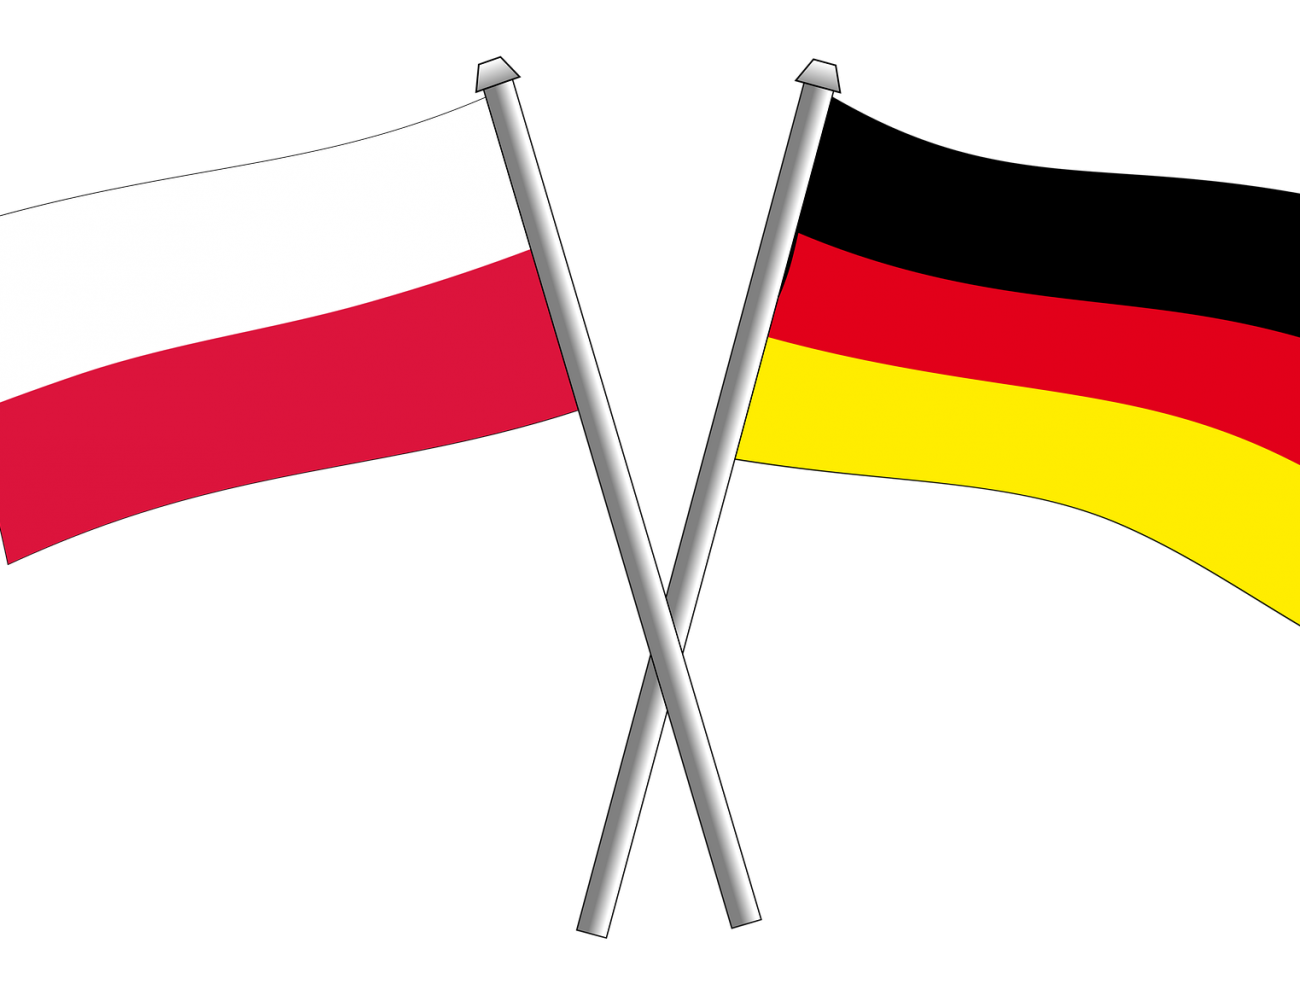 Polish and German flags